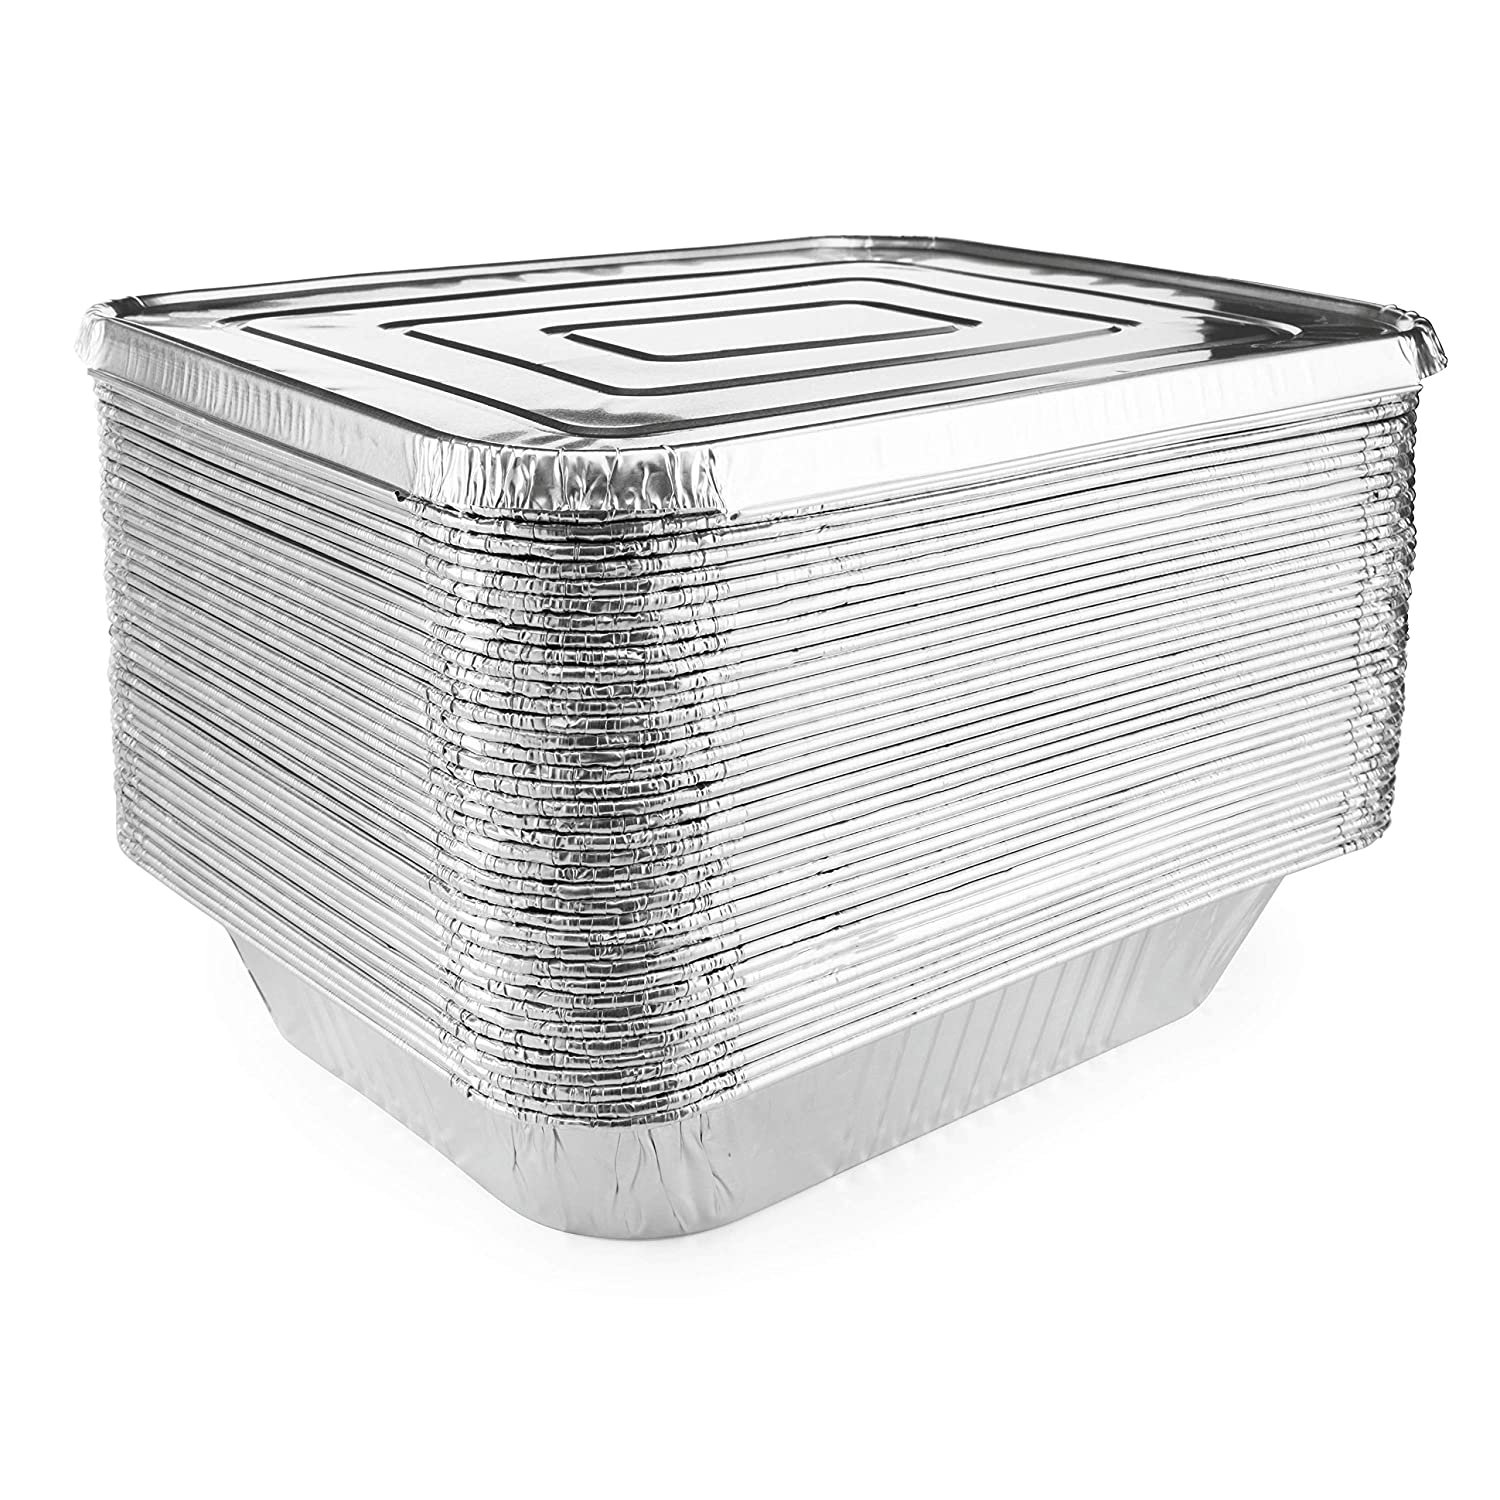 Aluminum Foil Pans with Lids (25 Pack) - 9X13 Heavy Duty Half Size Deep Foil  Pan